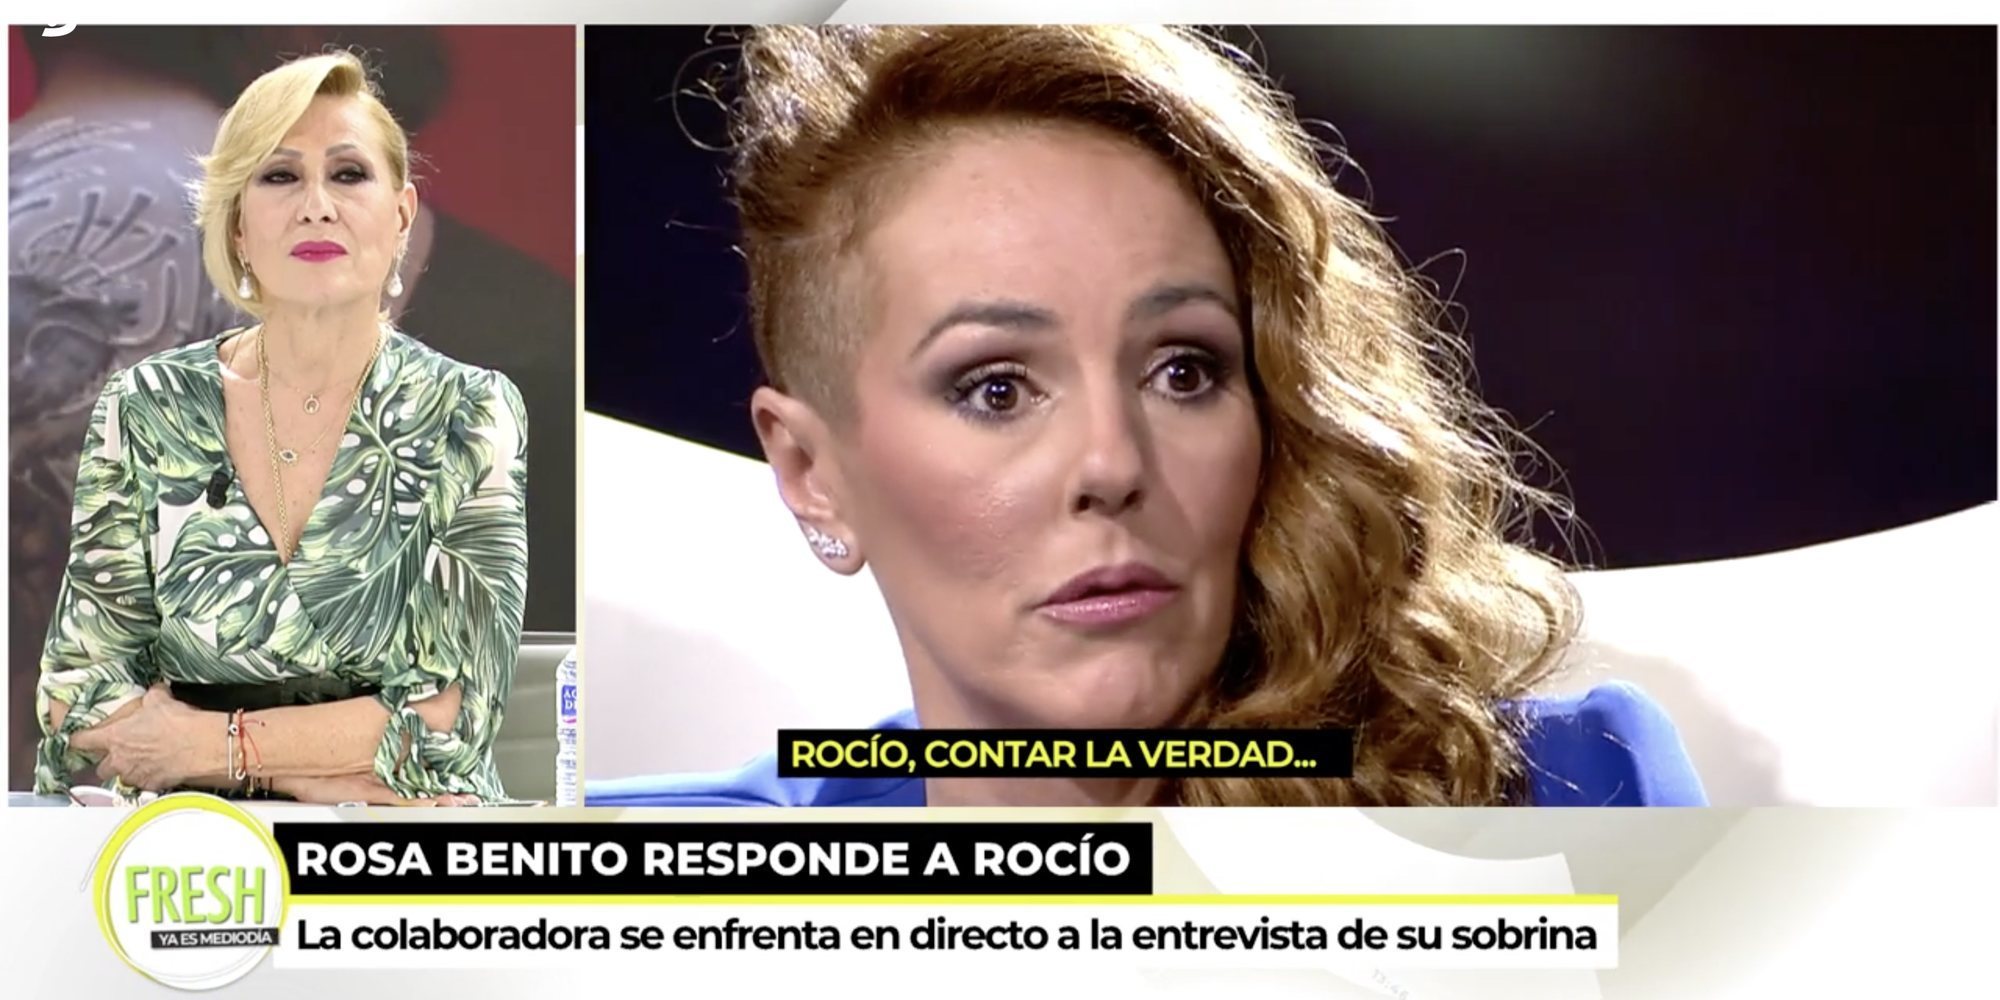 Rosa Benito, tras la entrevista de Rocío Carrasco: "Si me llama yo voy a estar ahí sin ninguna pregunta"